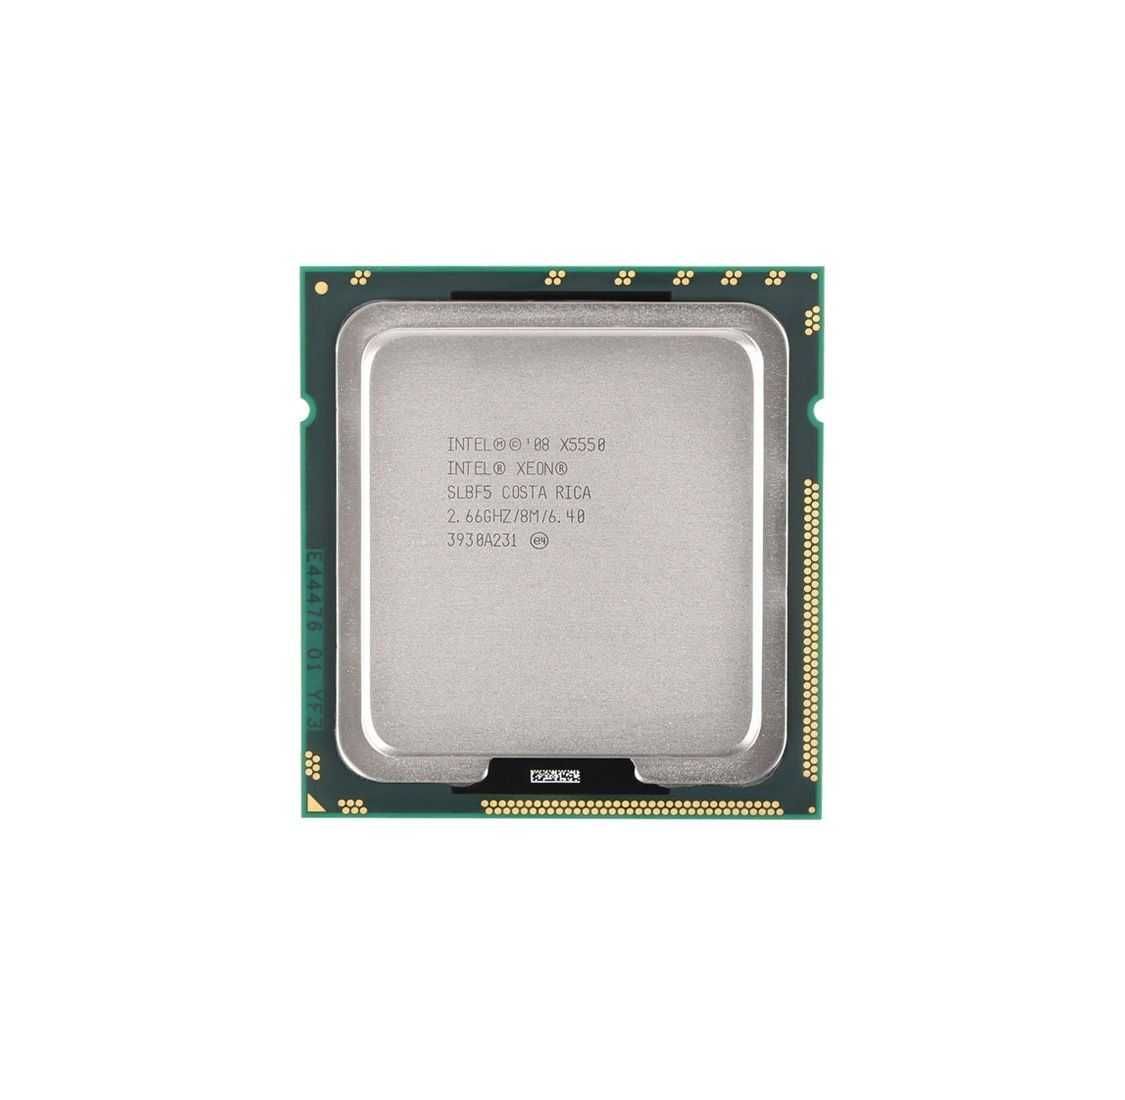 Процессор Intel Xeon X5550 (частота 2.66/3.06GHz)